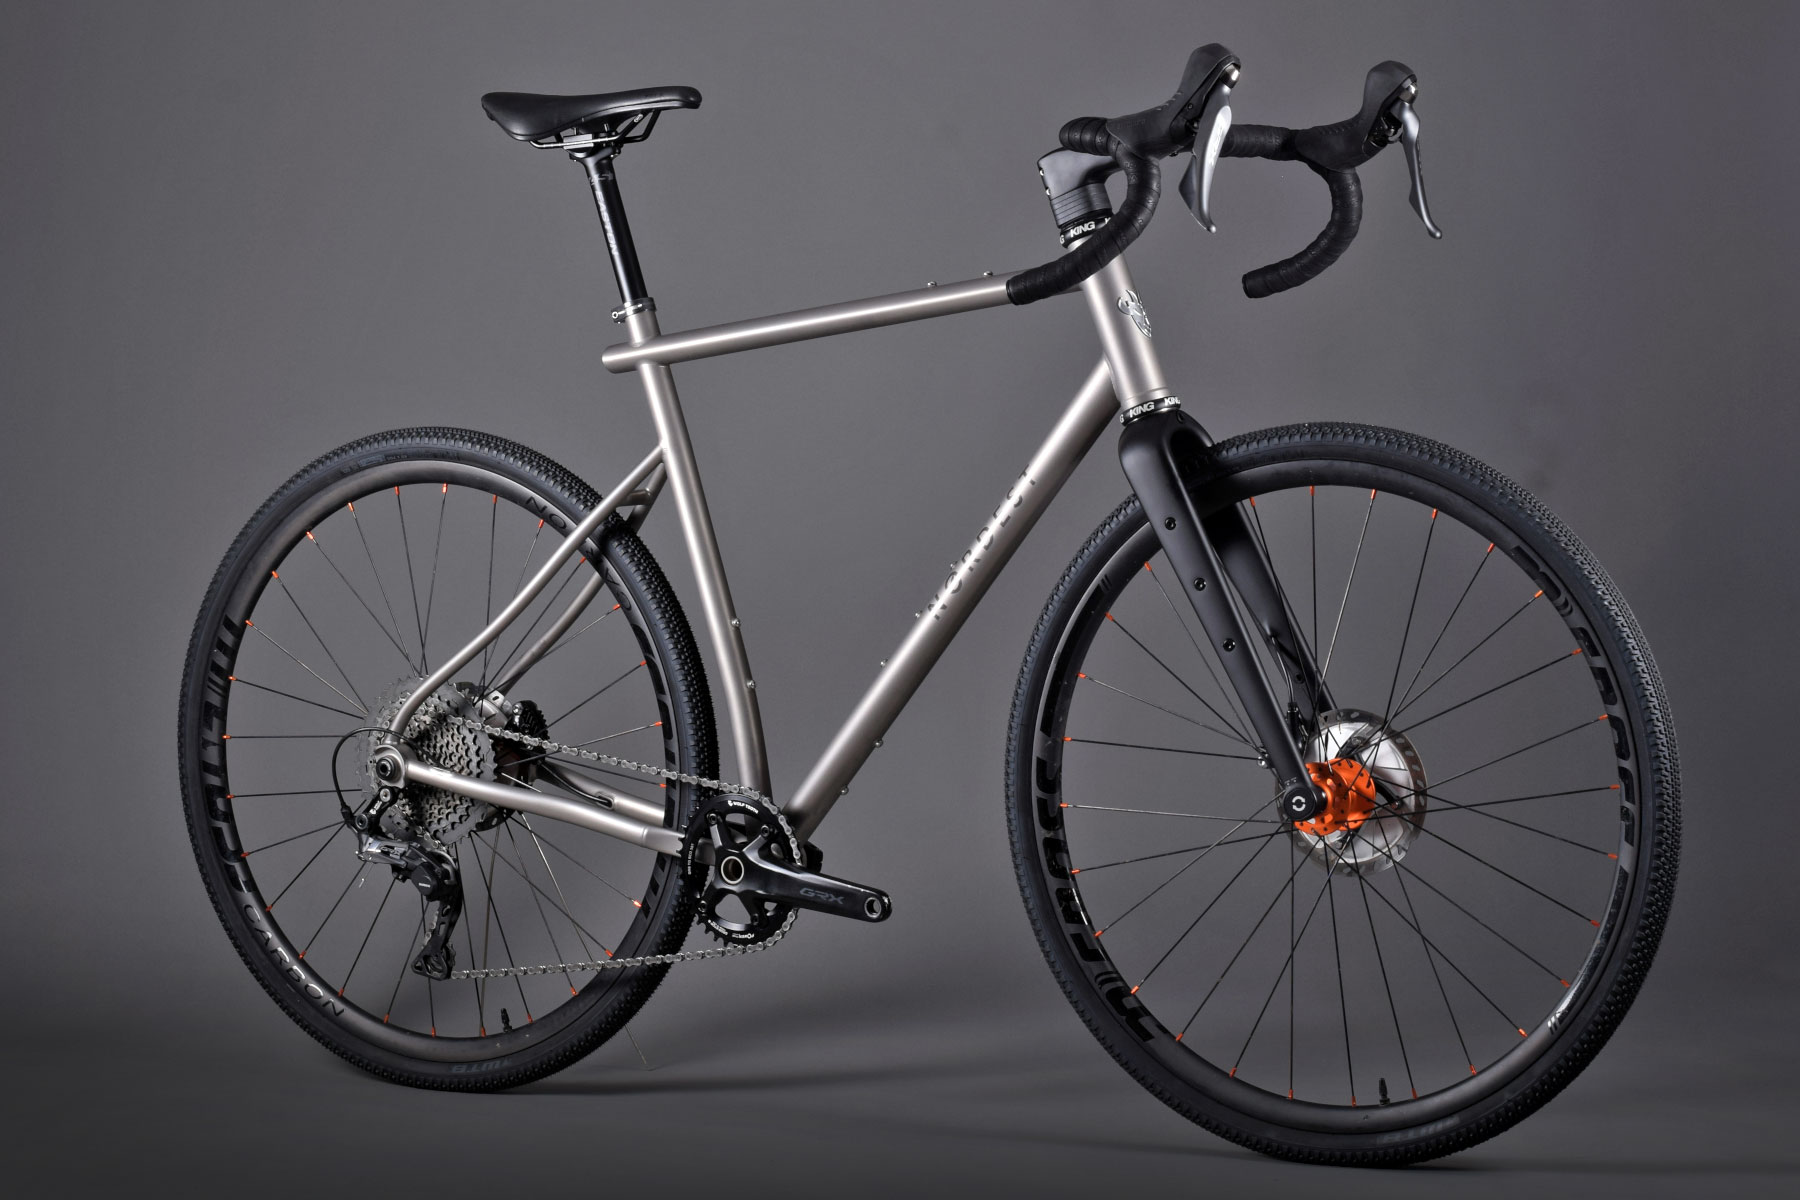 Nordest Albarda GT fully integrated titanium gravel all-road bike